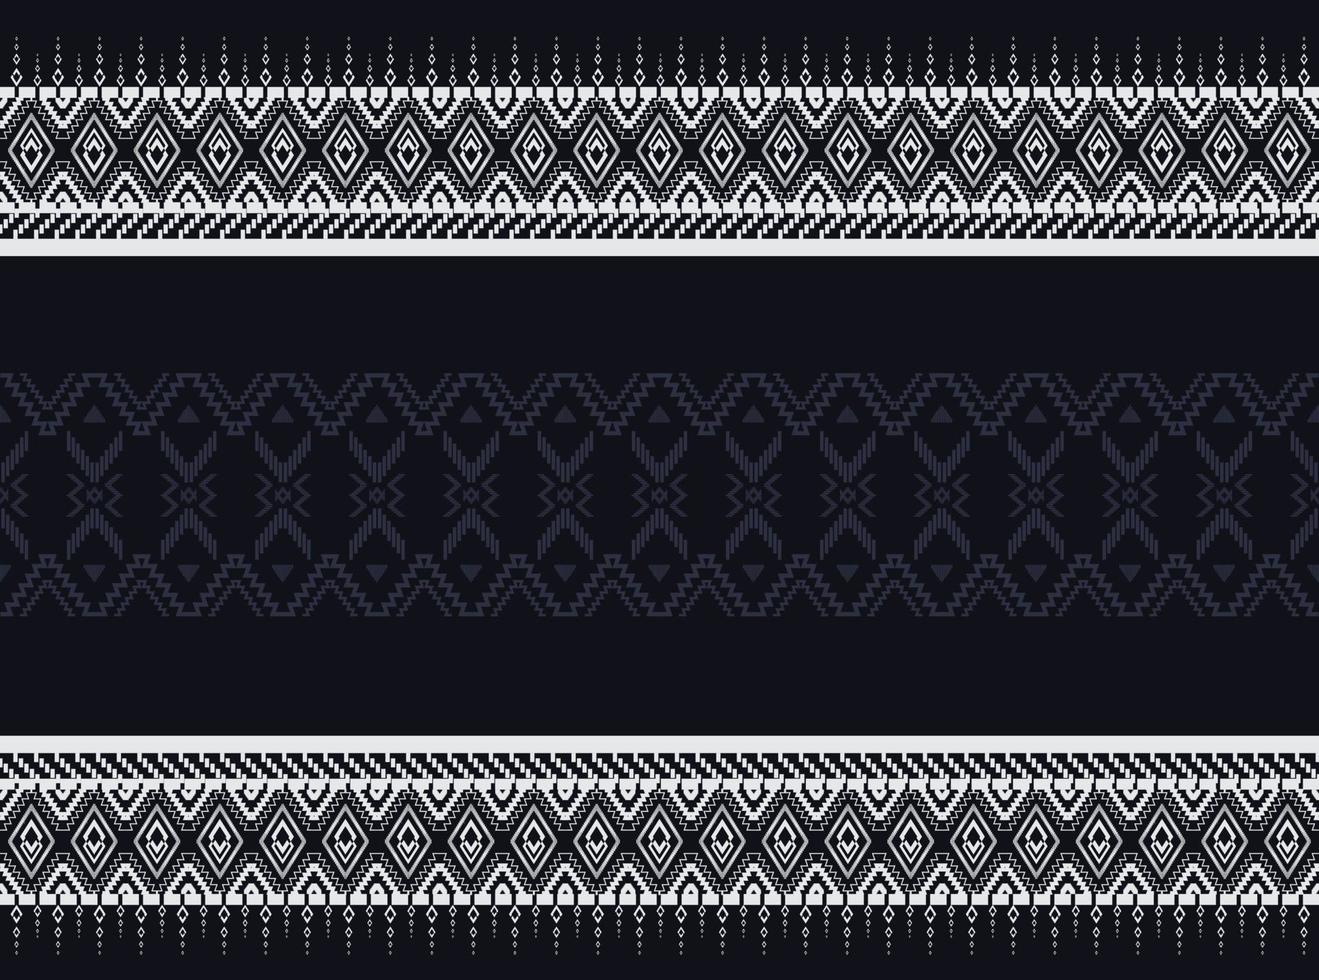 patrón étnico geométrico azul oscuro para fondo o papel pintado y ropa, falda, alfombra, papel pintado, ropa, envoltura, batik, tela, ropa, con vector de triángulo azul oscuro, ilustración